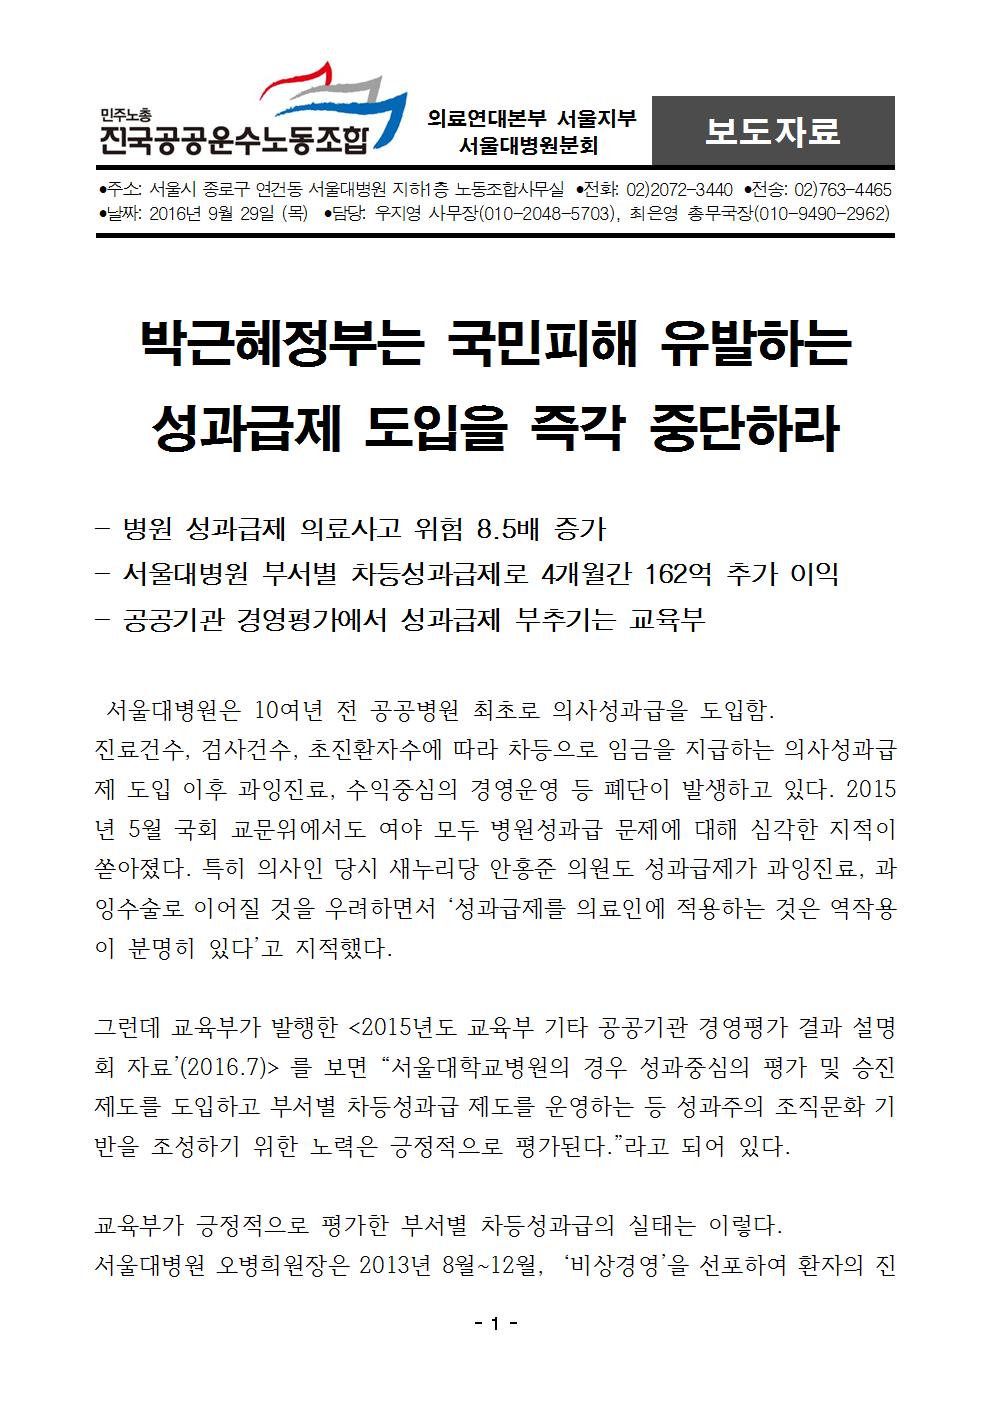 [보도자료]0929 서울대병원 성과급제 도입 반대001.jpg